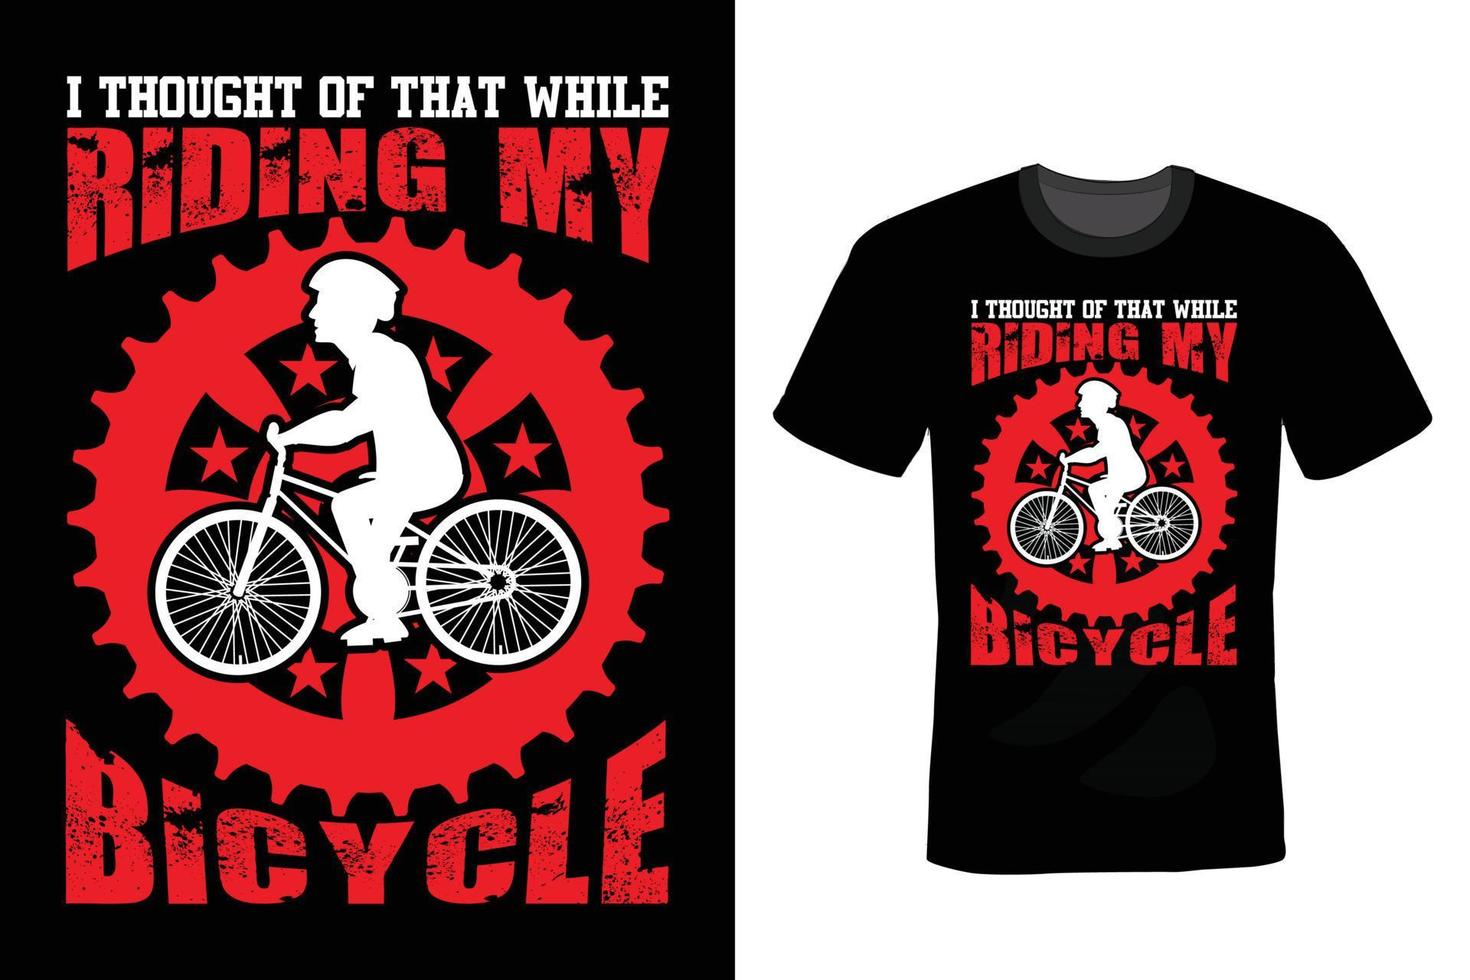 design della maglietta della bicicletta, vintage, tipografia vettore